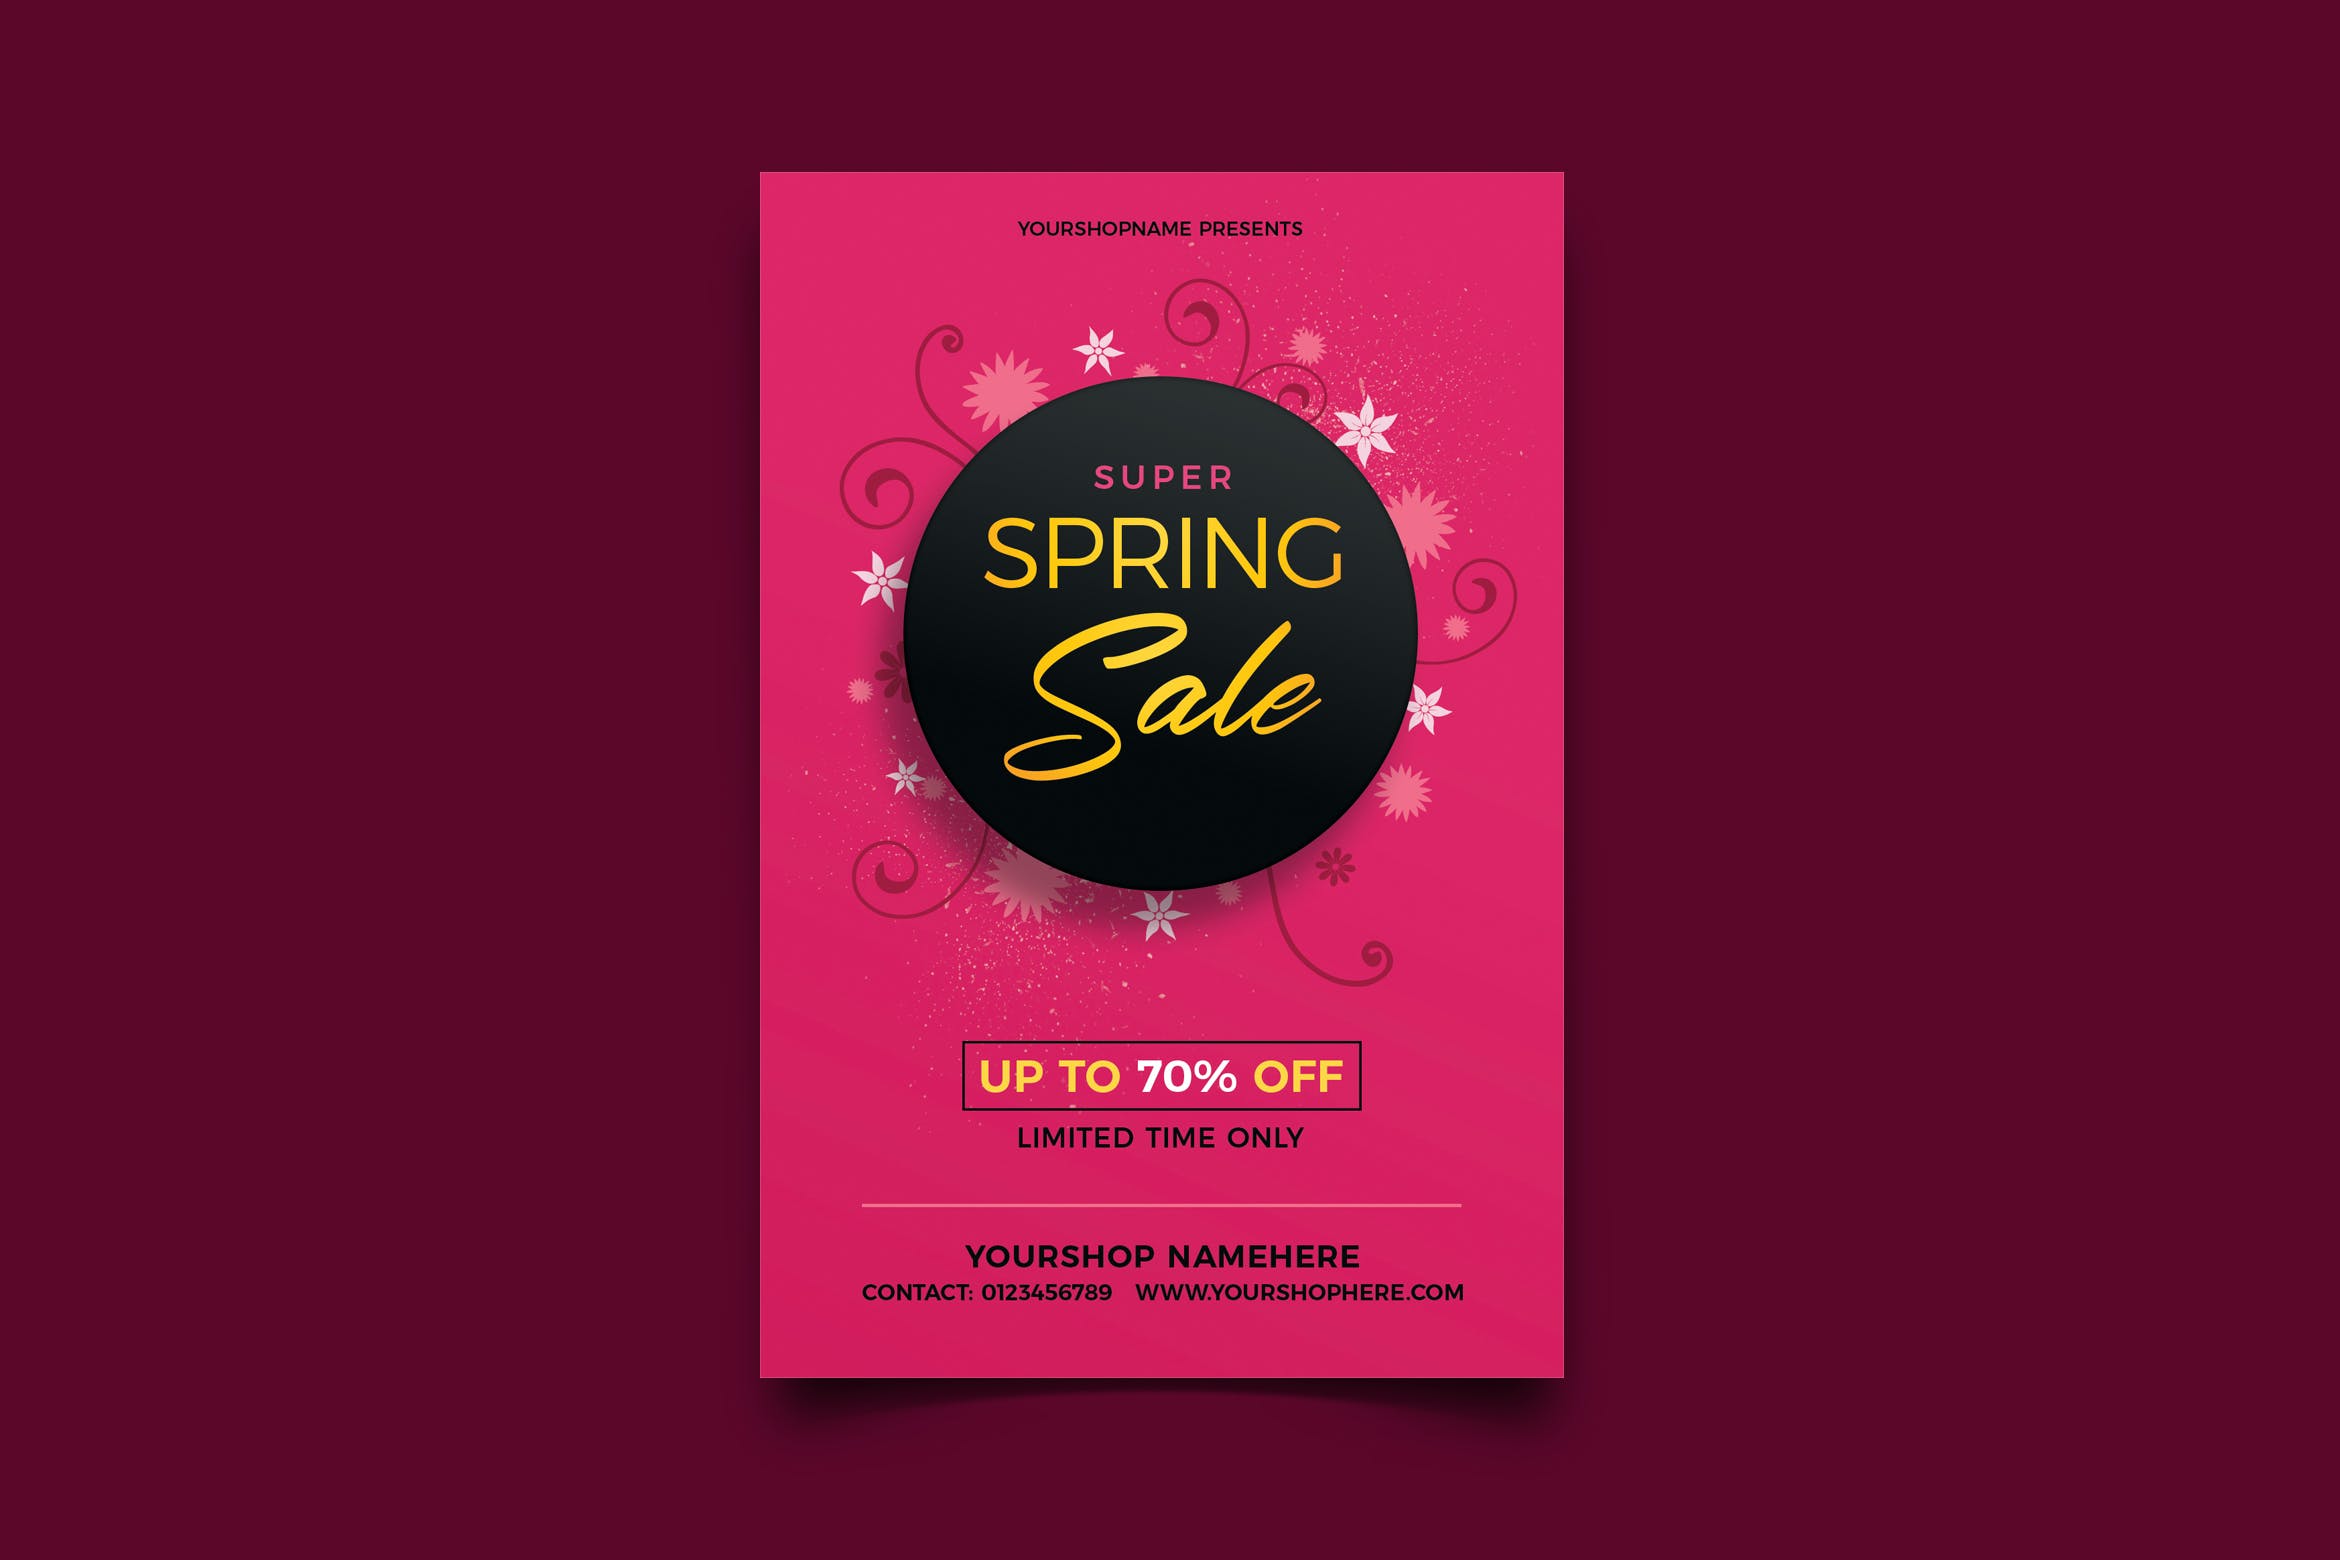 春季折扣促销宣传单设计模板 Spring Sale 设计素材 第1张